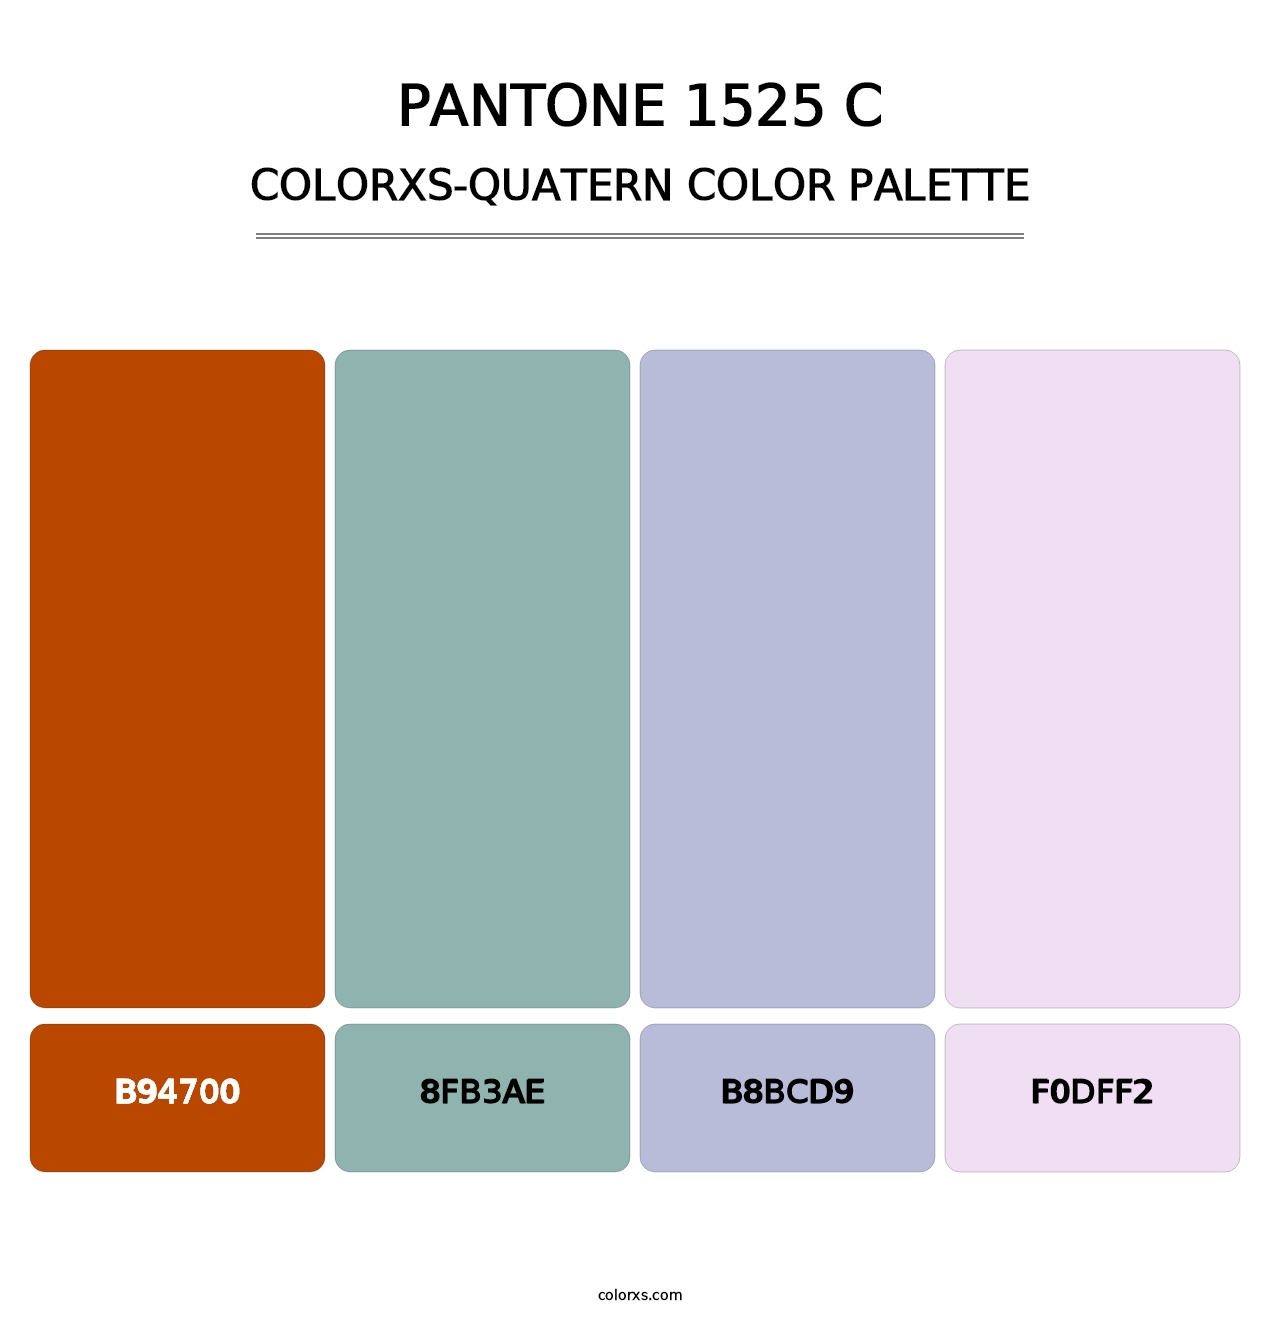 PANTONE 1525 C - Colorxs Quatern Palette